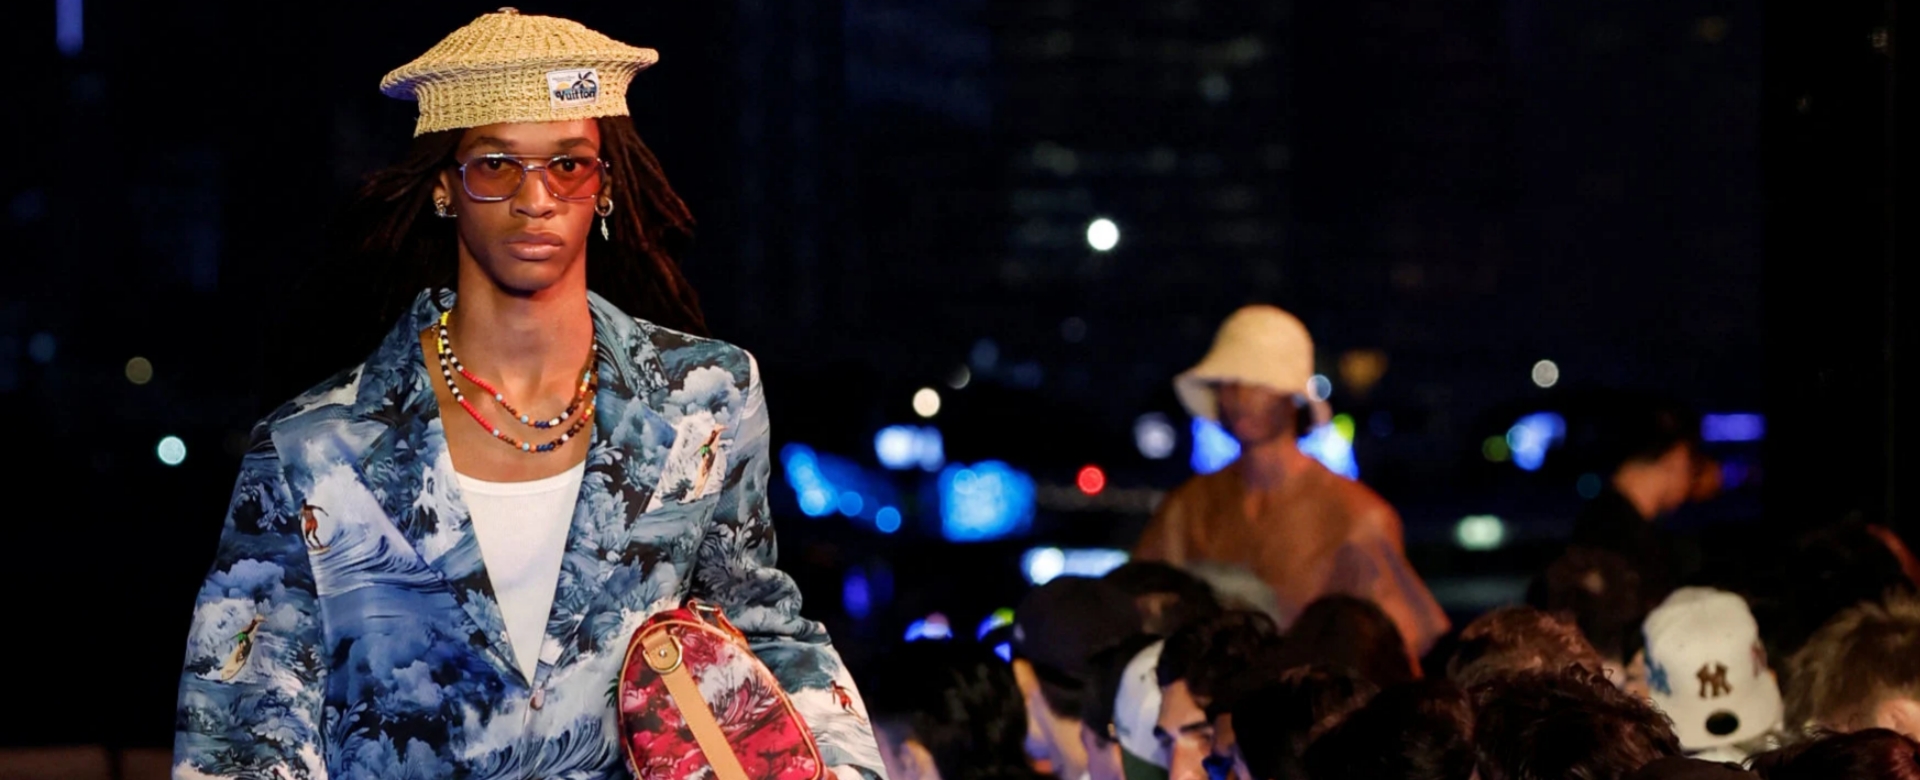 Louis Vuitton mang đến điều gì thú vị trong show diễn thời trang tại Hồng Kông?